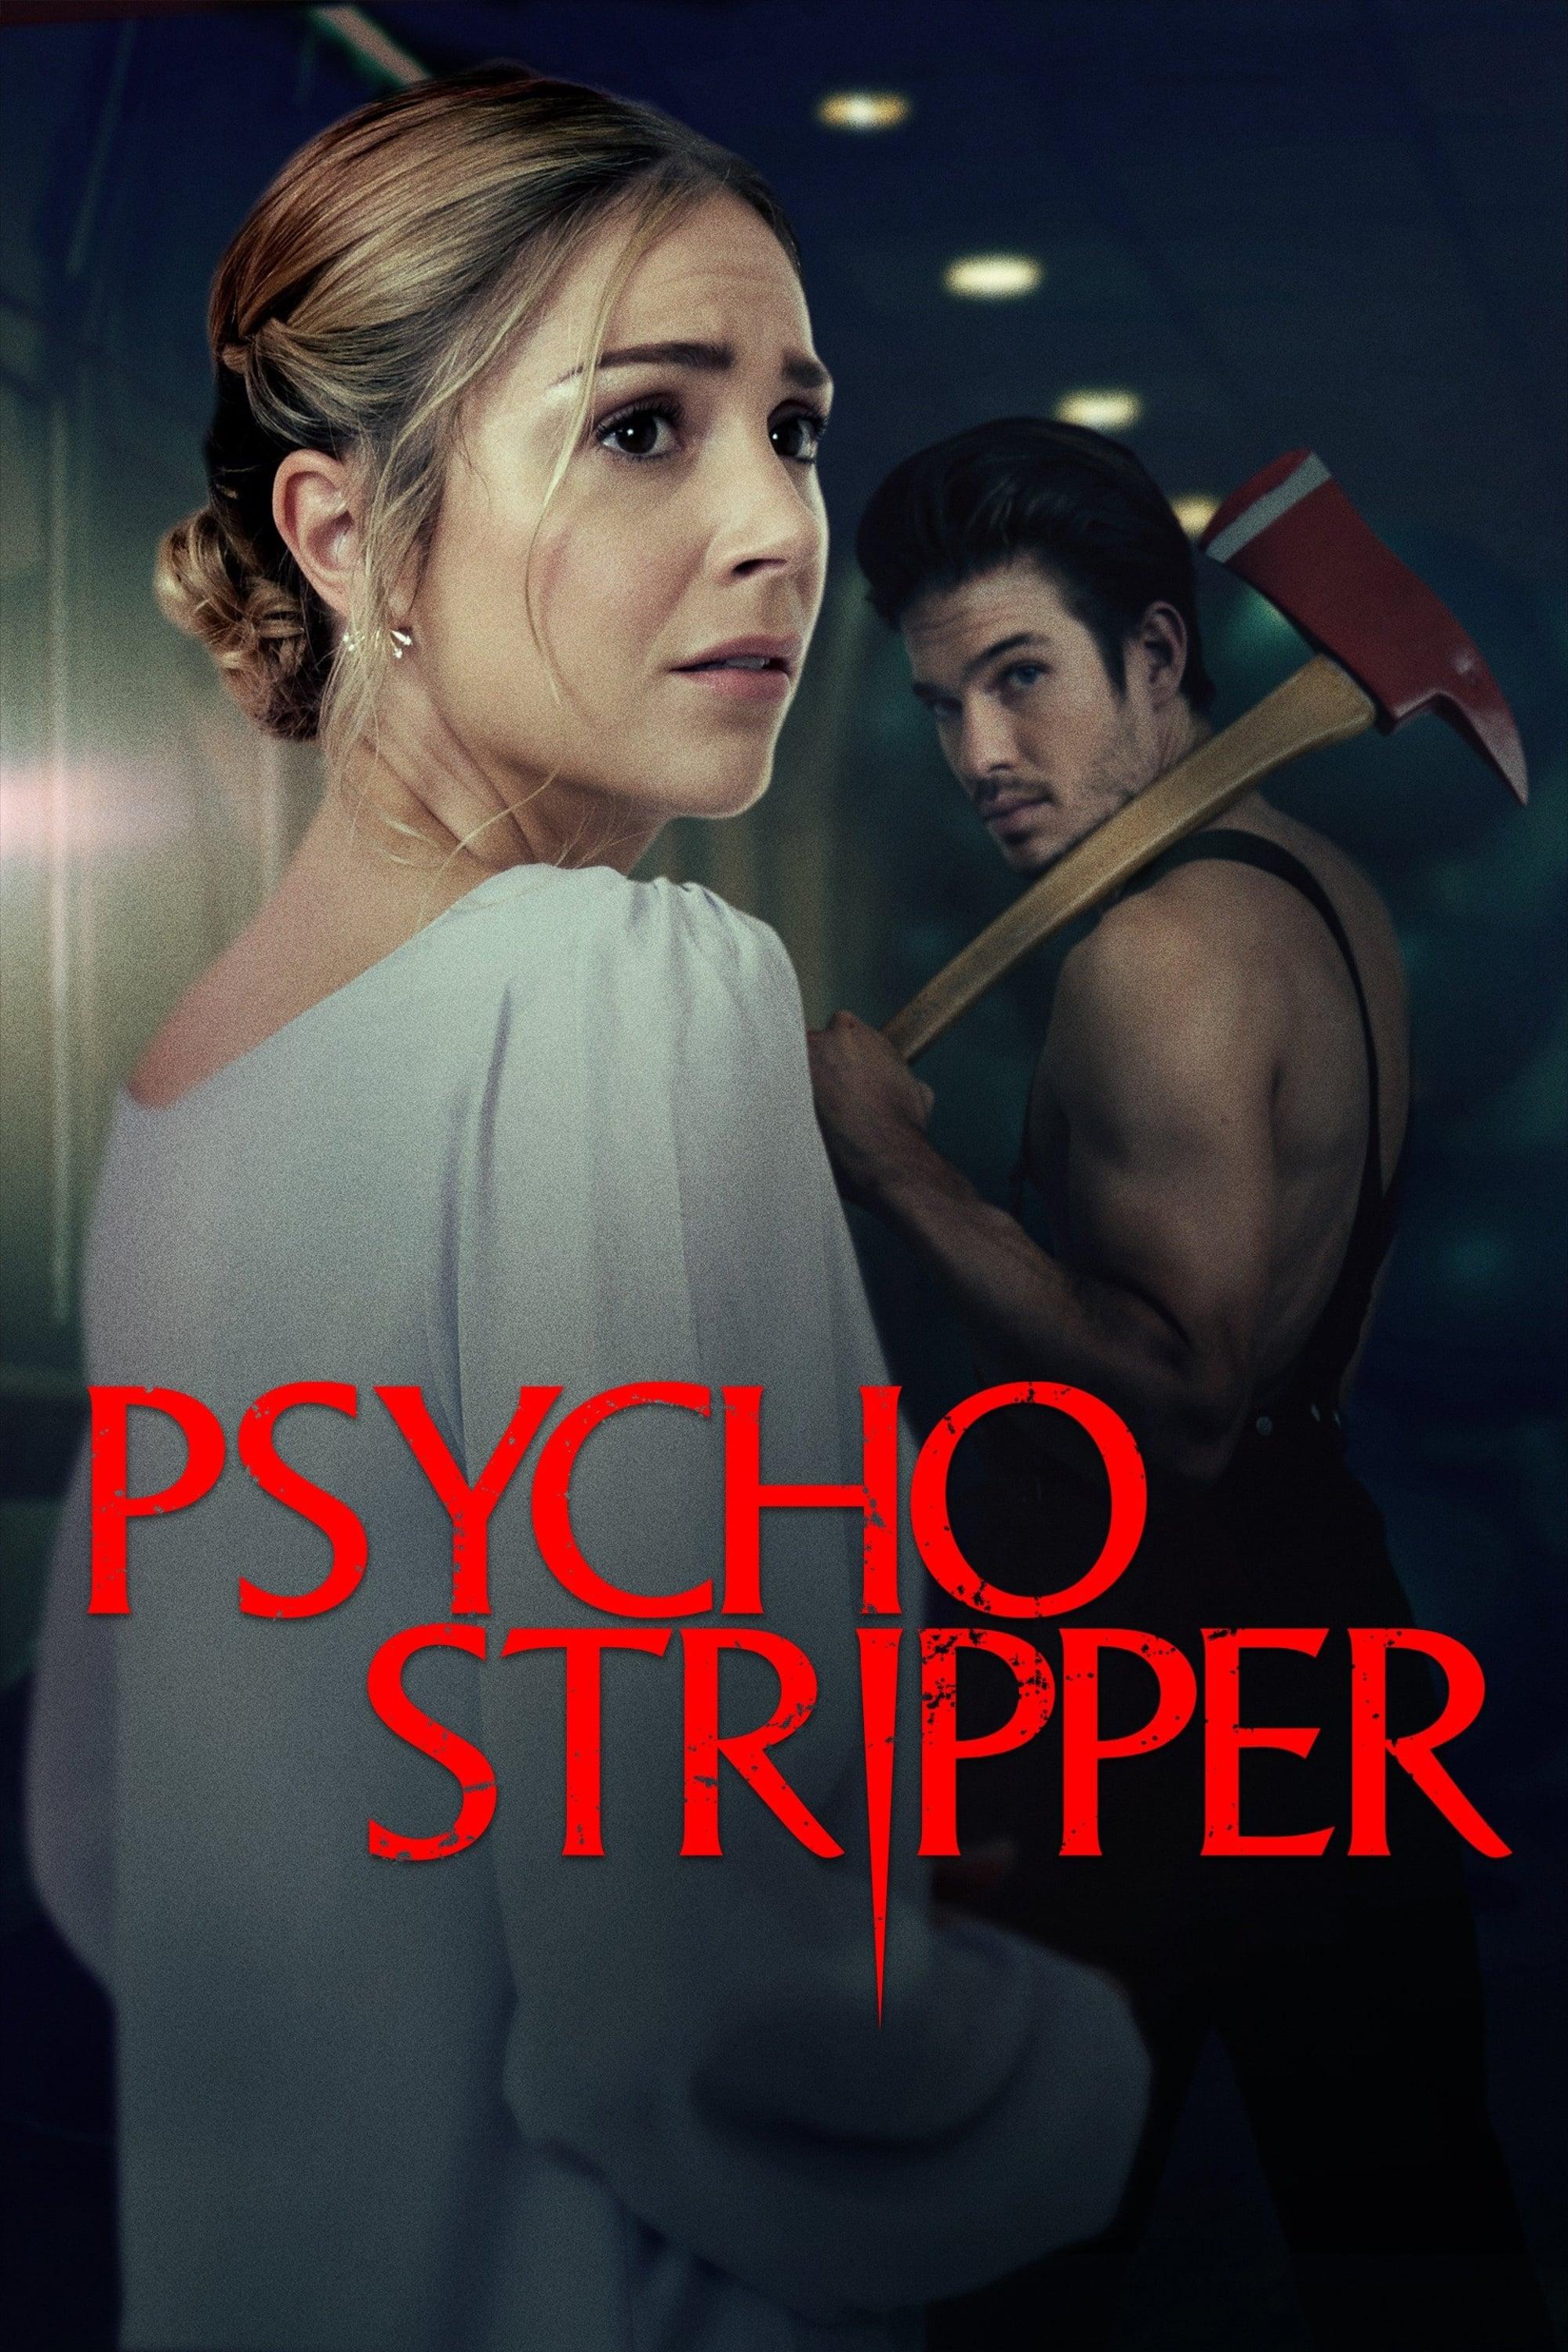 Psycho Stripper poster